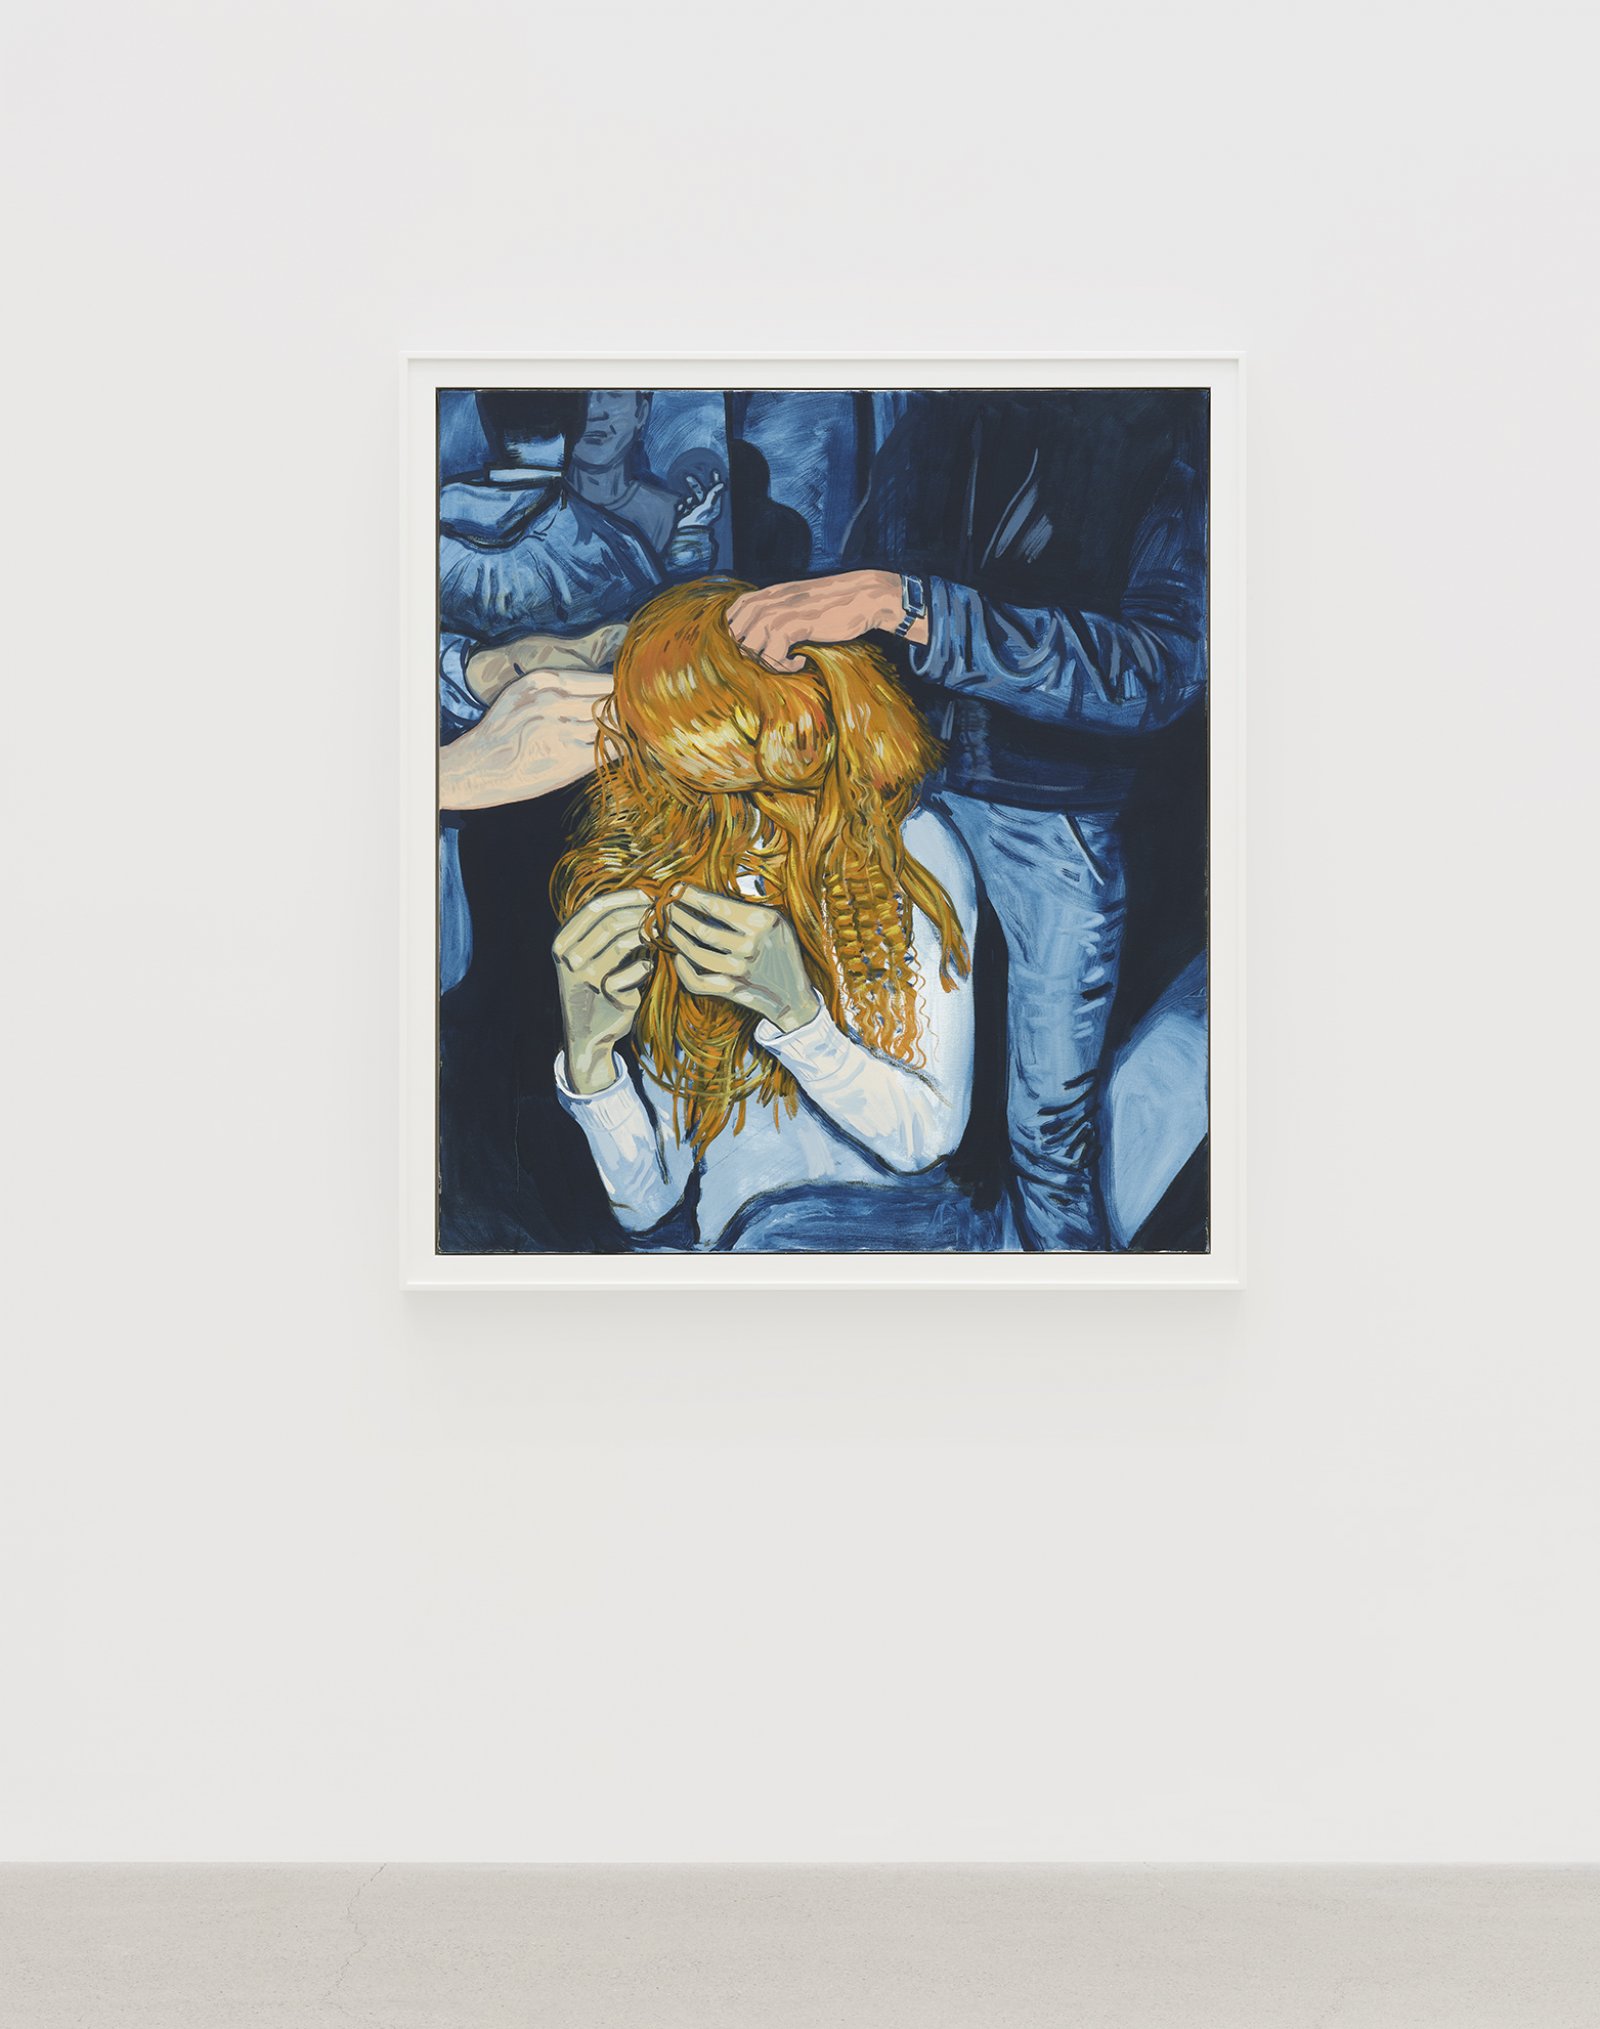 ​Damian Moppett, Hairdo, 2020, oil on canvas, 51 x 45 in. (128 x 115 cm) by Damian Moppett